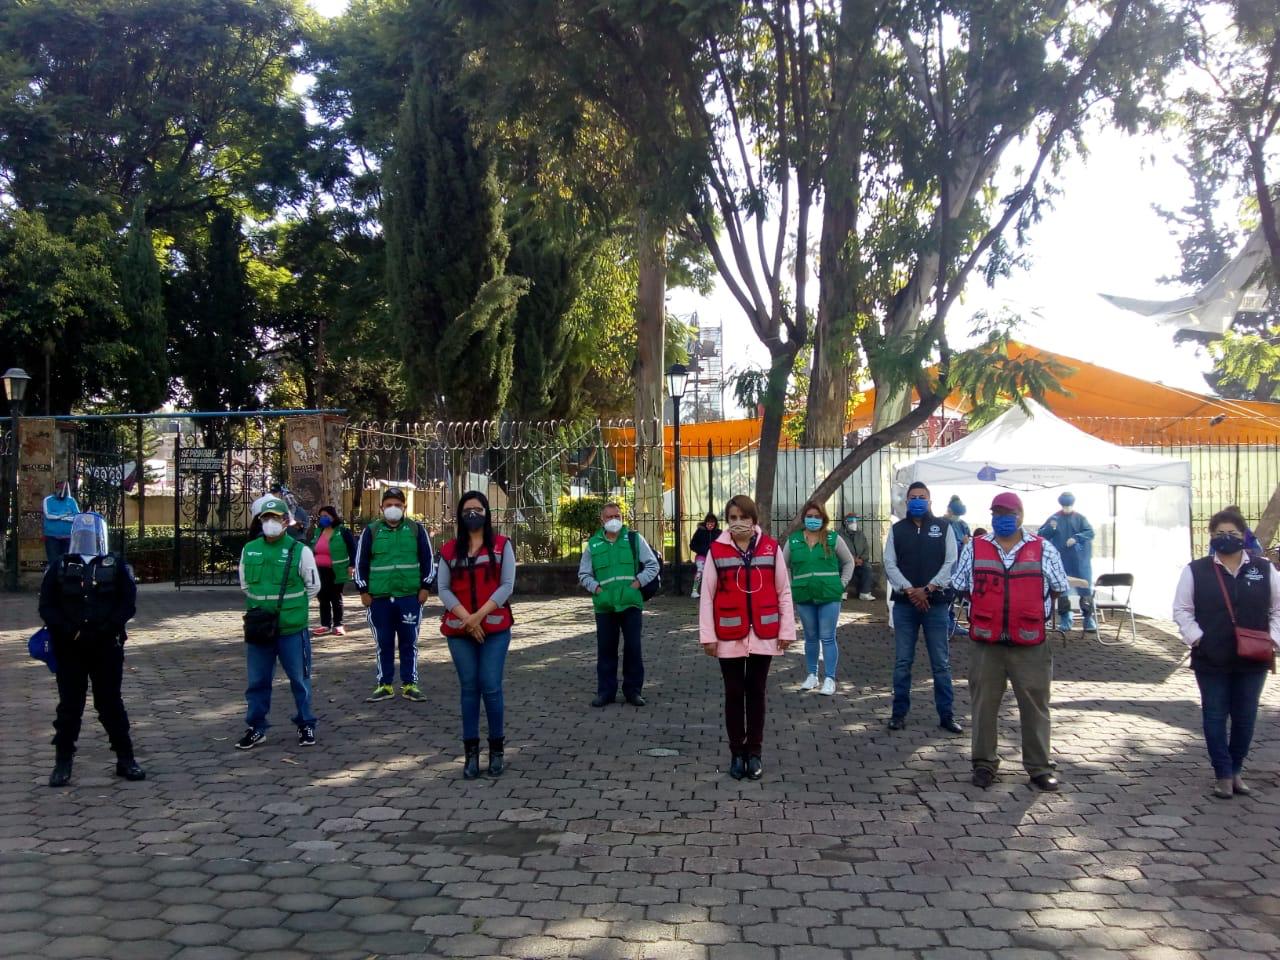 En Xochimilco hay 5 Kioscos de la Salud para hacerse una prueba de Covid gratis, los vecinos pueden acceder a programas sociales y apoyos por coronavirus. 1